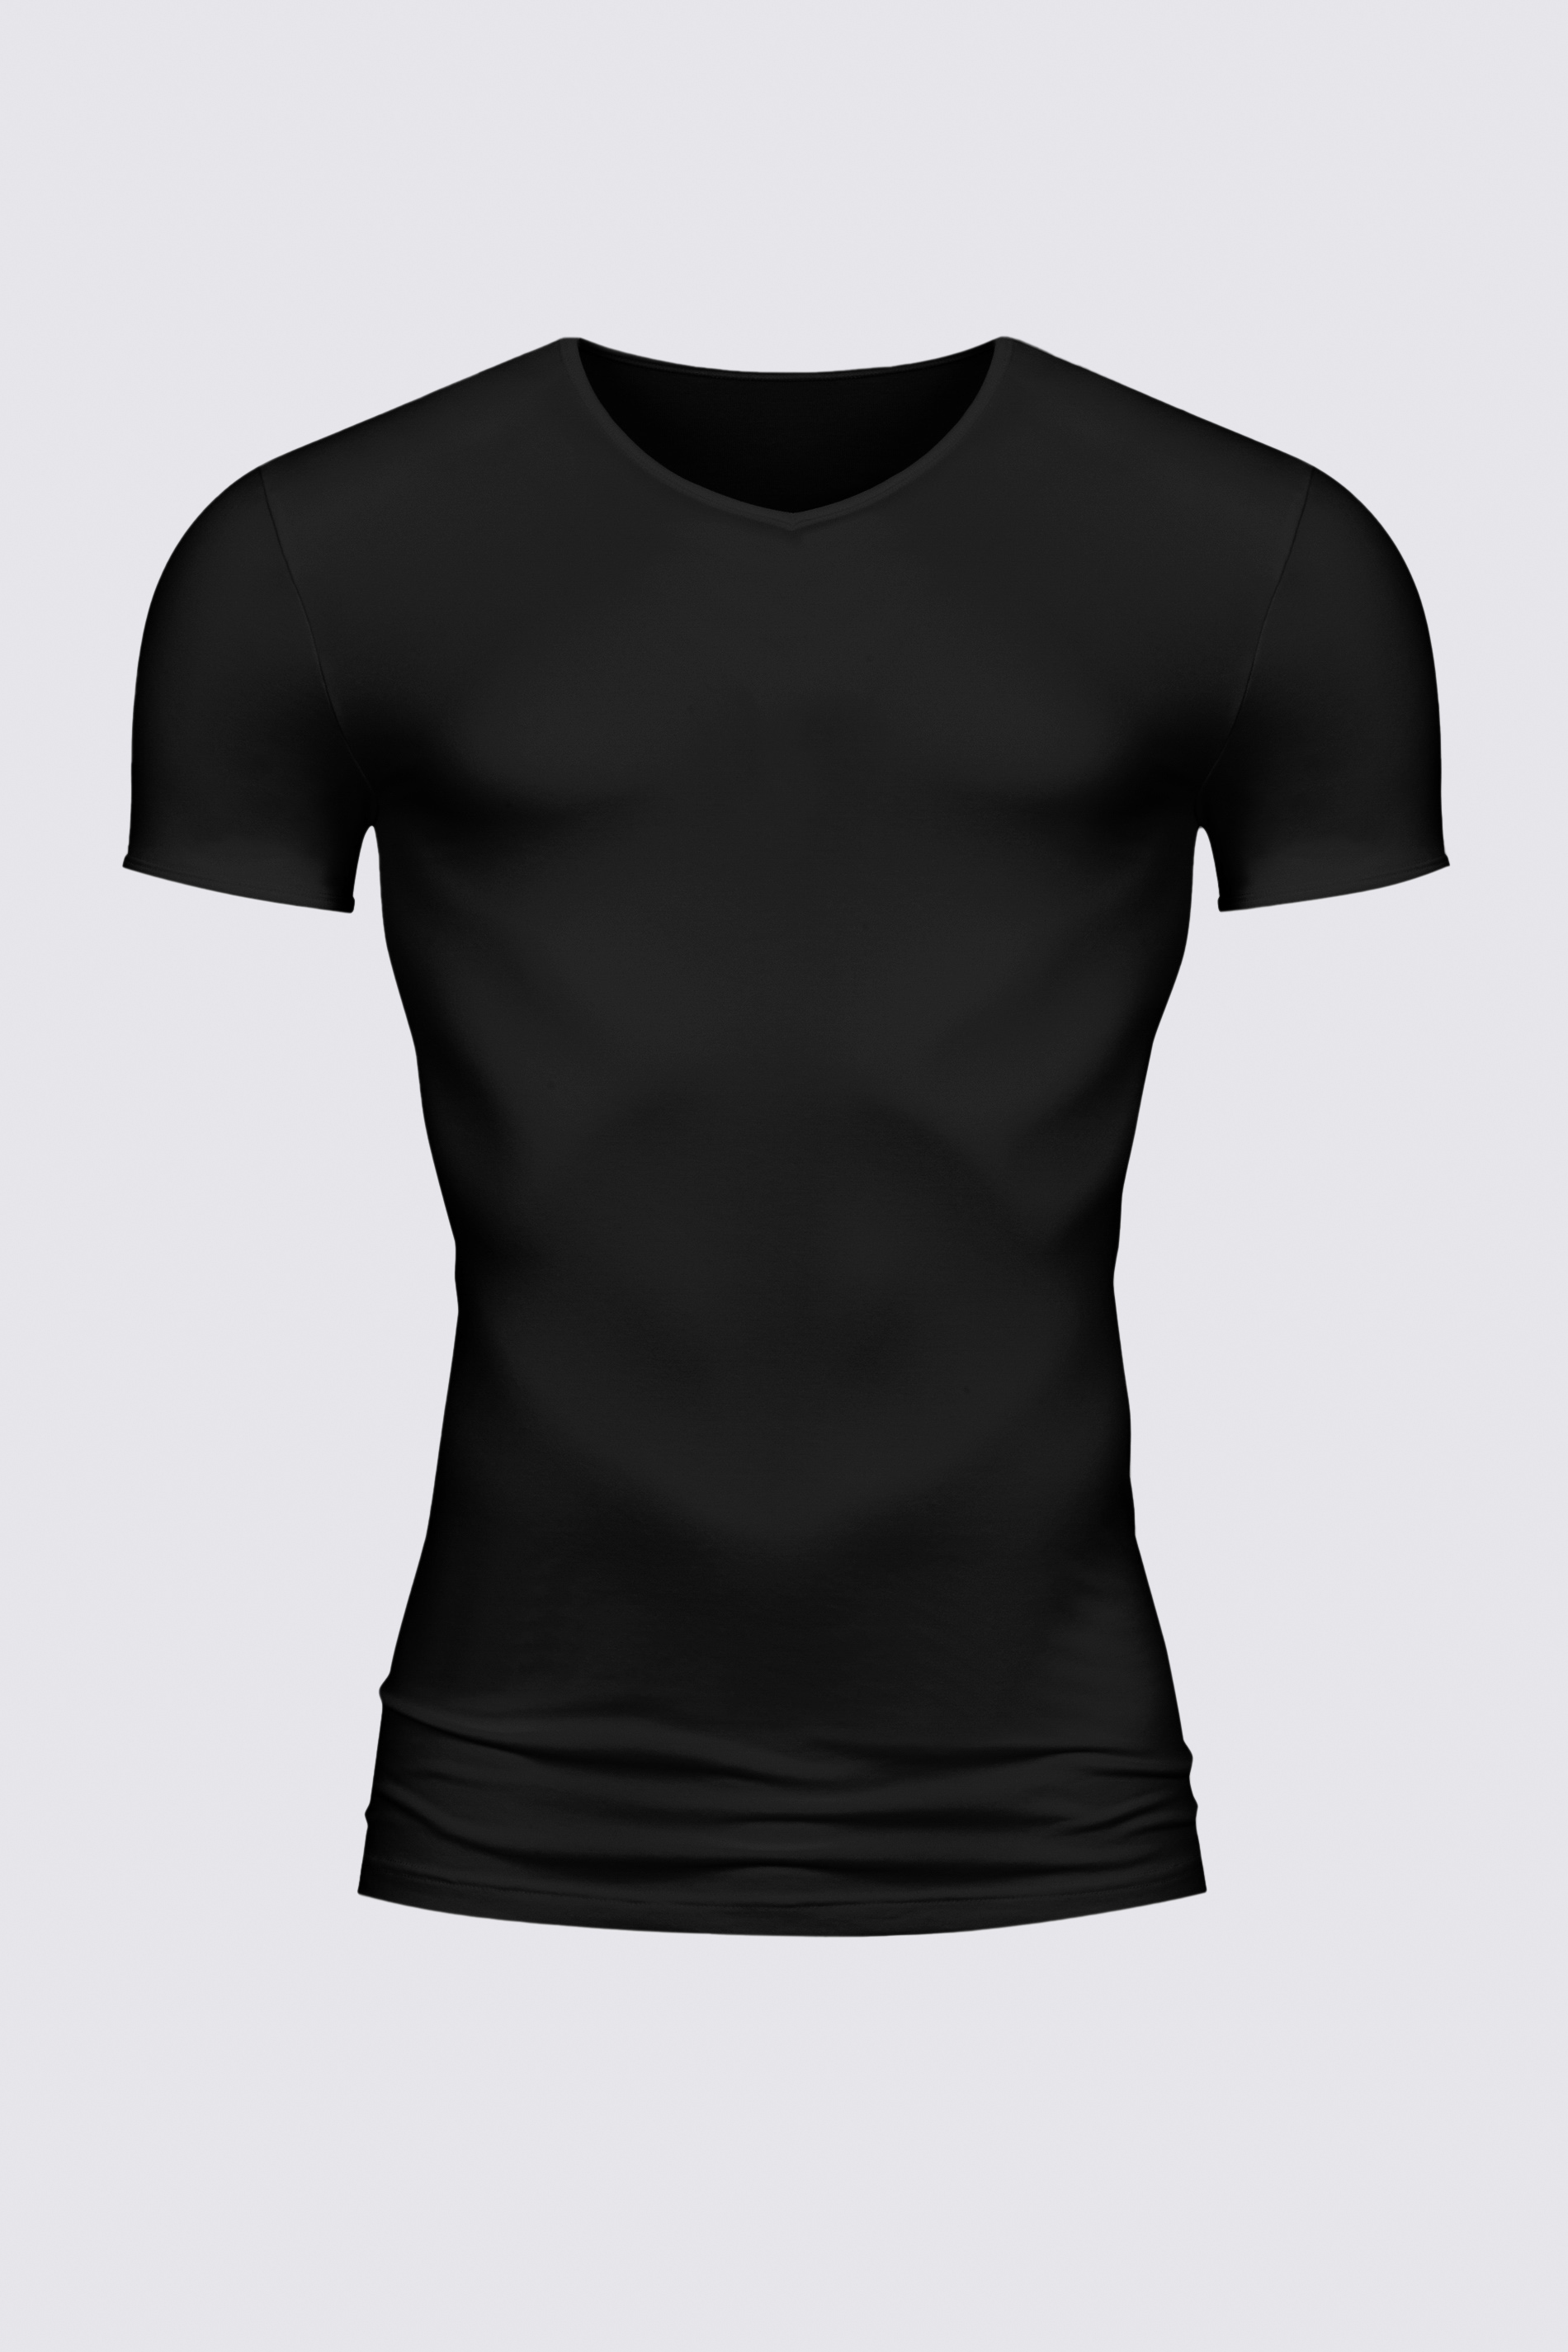 Shirt Zwart Serie Software Uitknippen | mey®